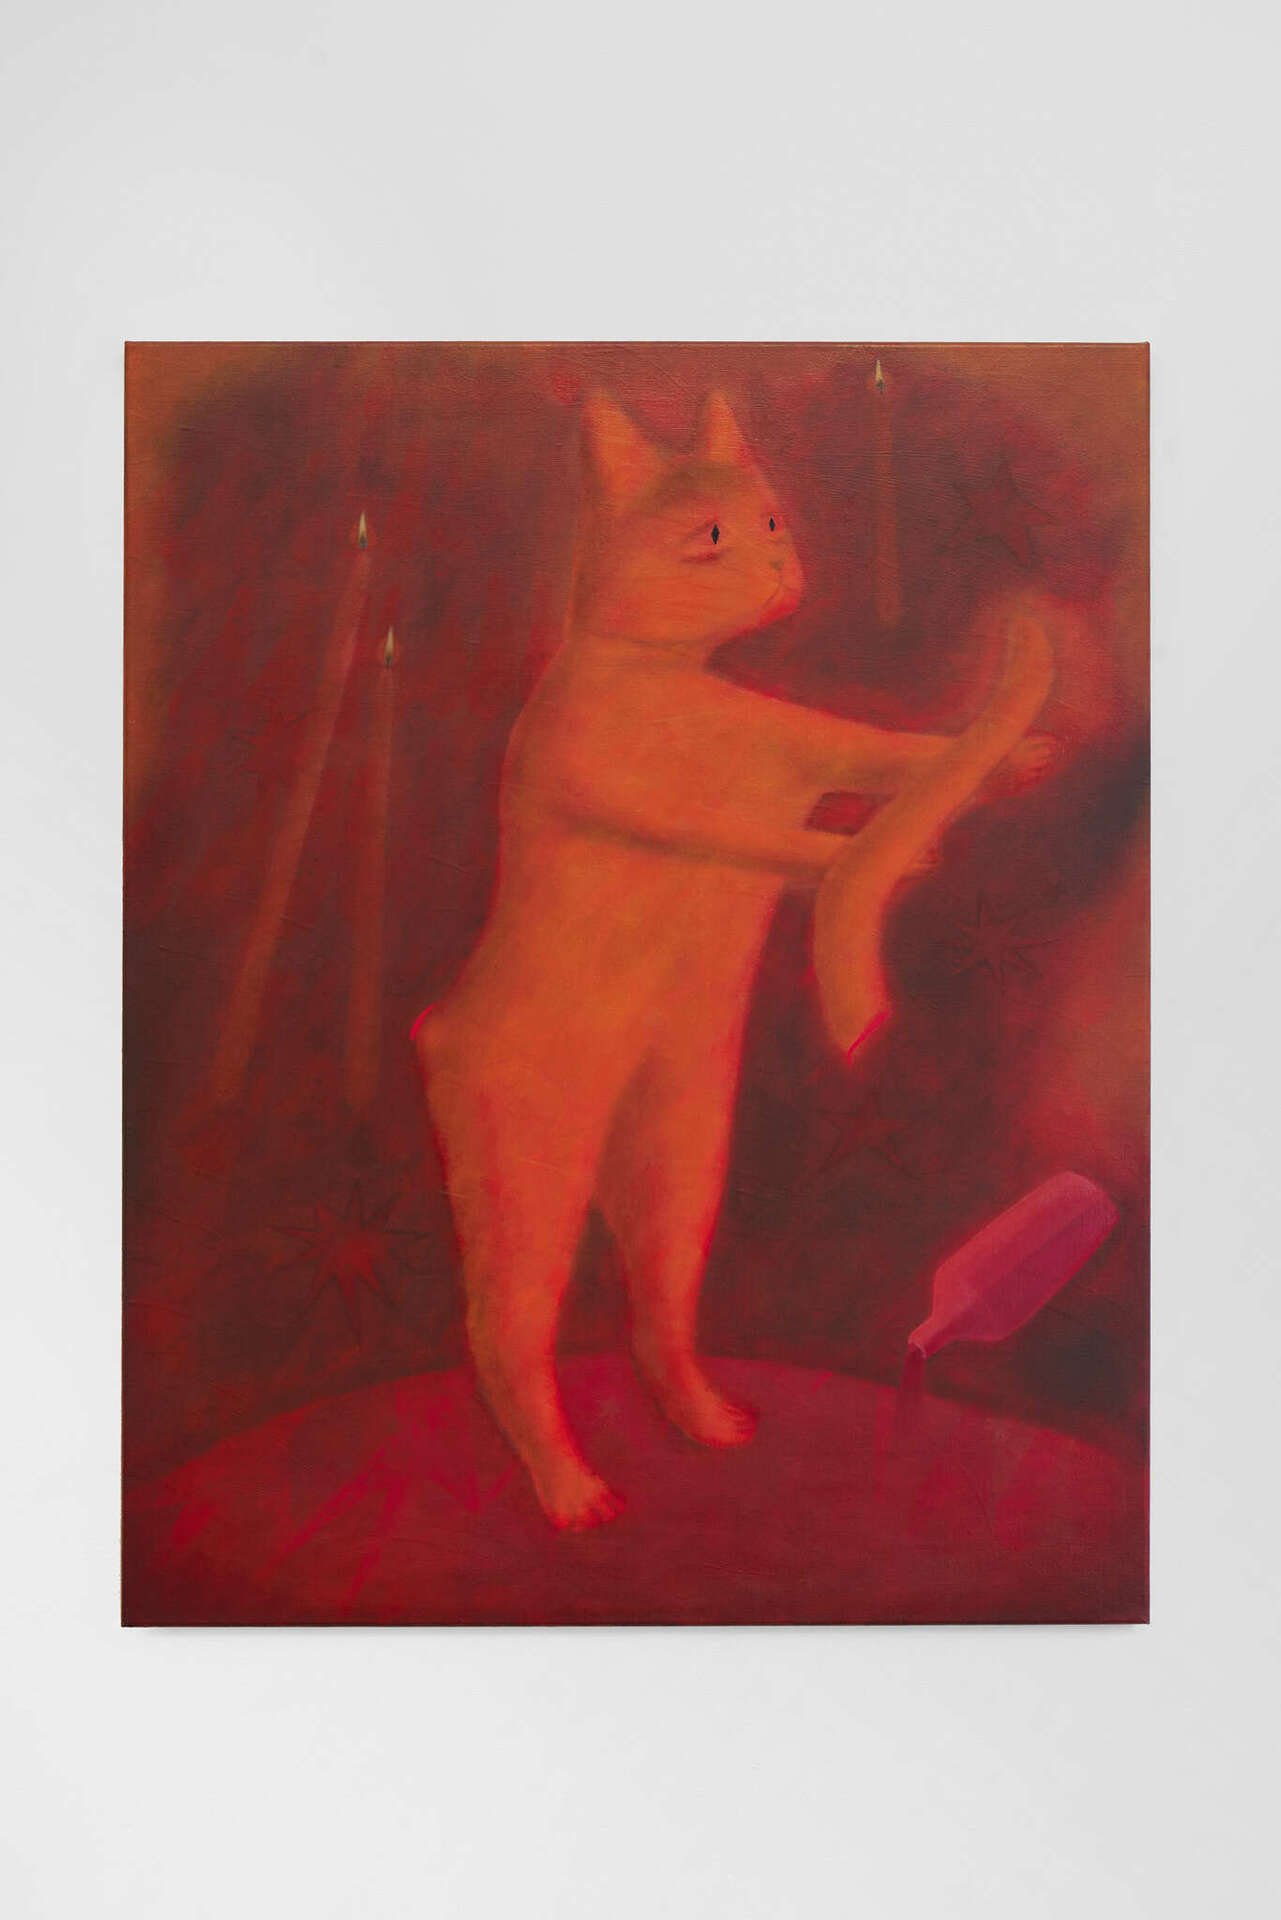 Aisha Christison, Severing instinct, 2020, oil on linen, 100 x 80 cm